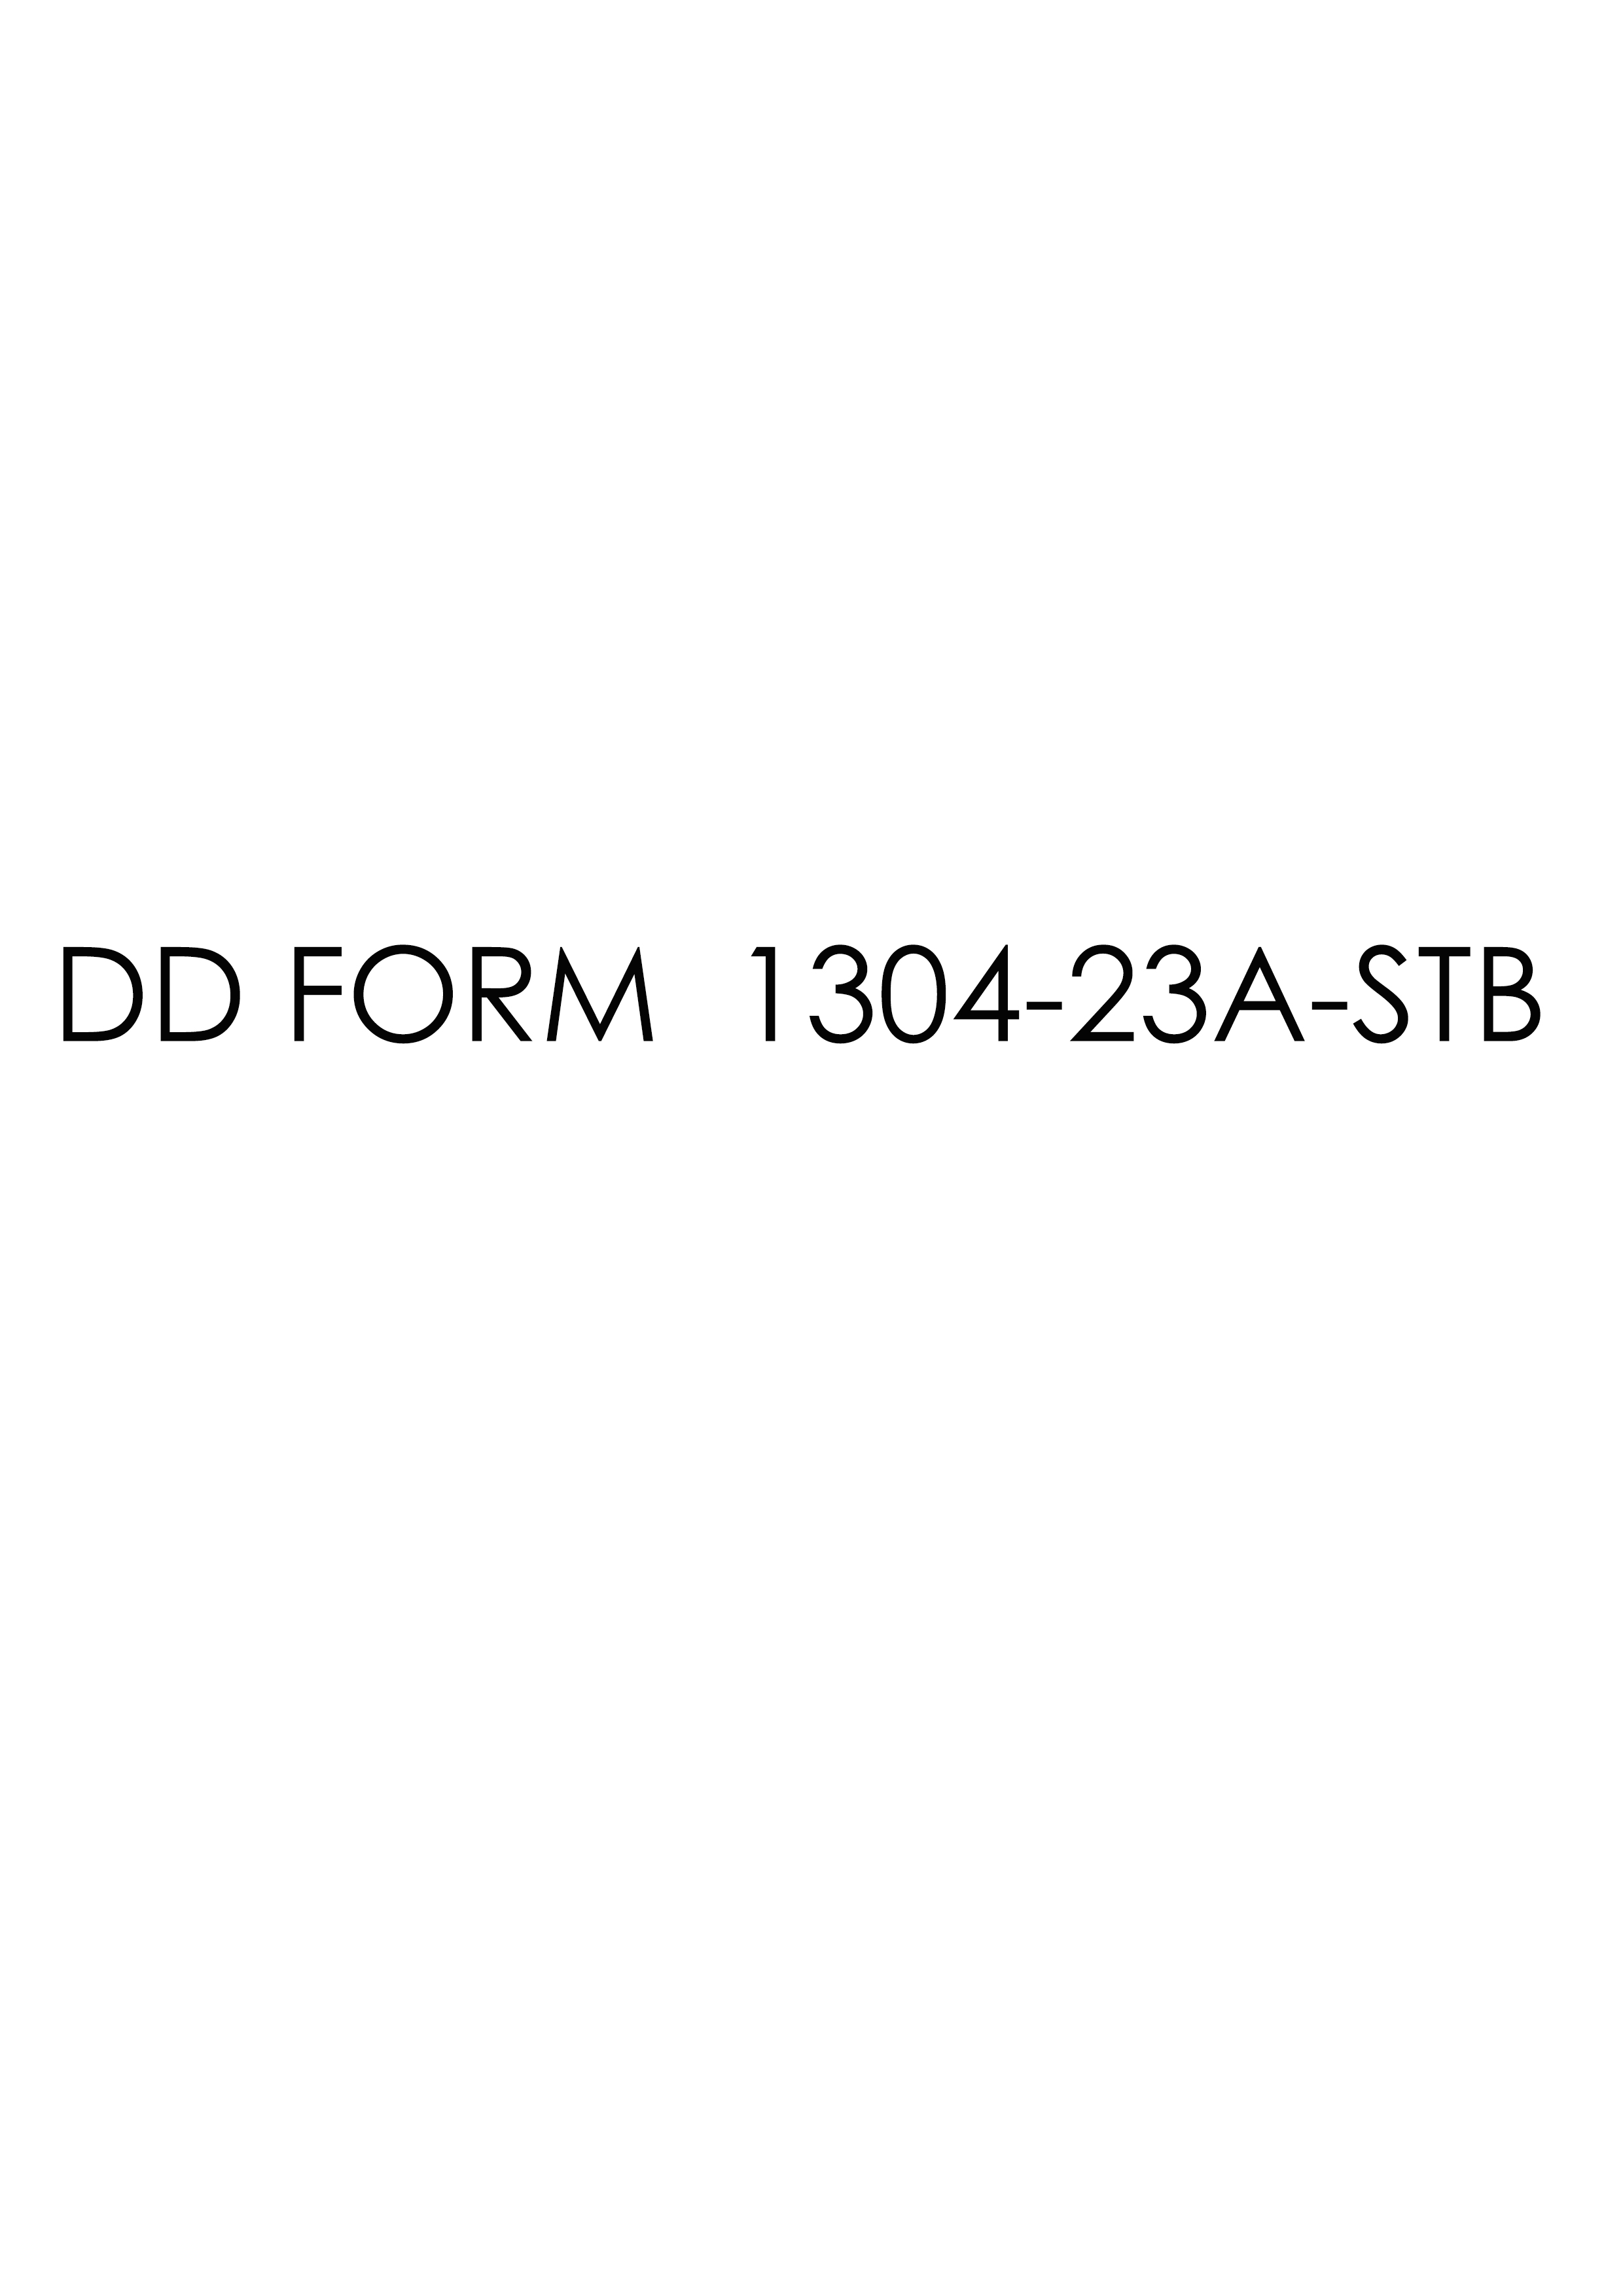 Download dd 1304-23A-STB Form